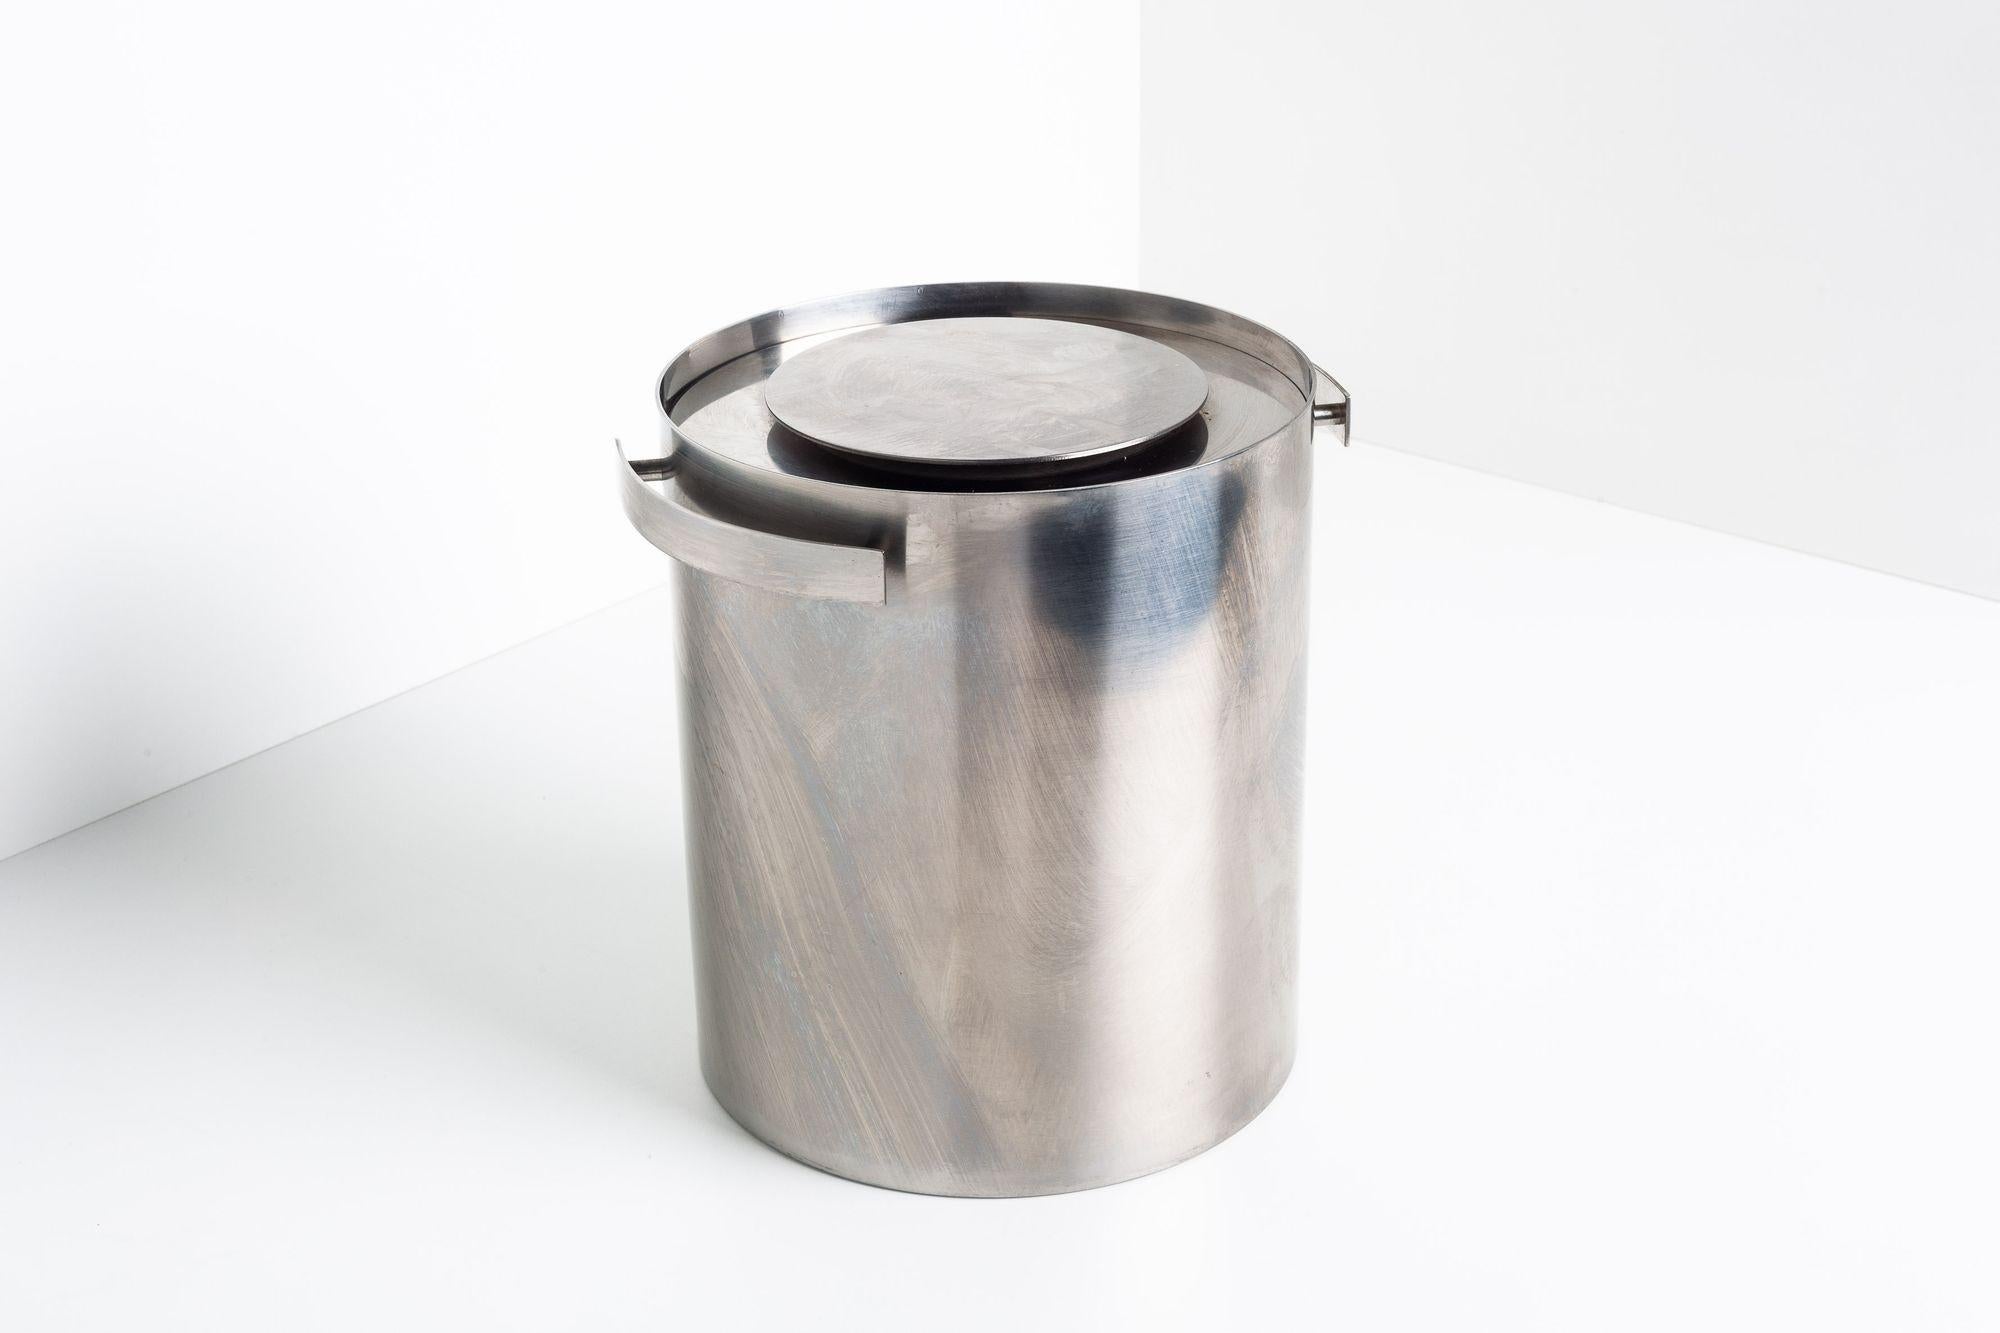 Le seau à glace AJ original d'Arne Jacobsen a été conçu en 1969 dans le cadre de sa ligne Cylinda. La forme cylindrique simple en acier inoxydable constitue une silhouette frappante dans n'importe quel intérieur. Absolument idéale pour rafraîchir le